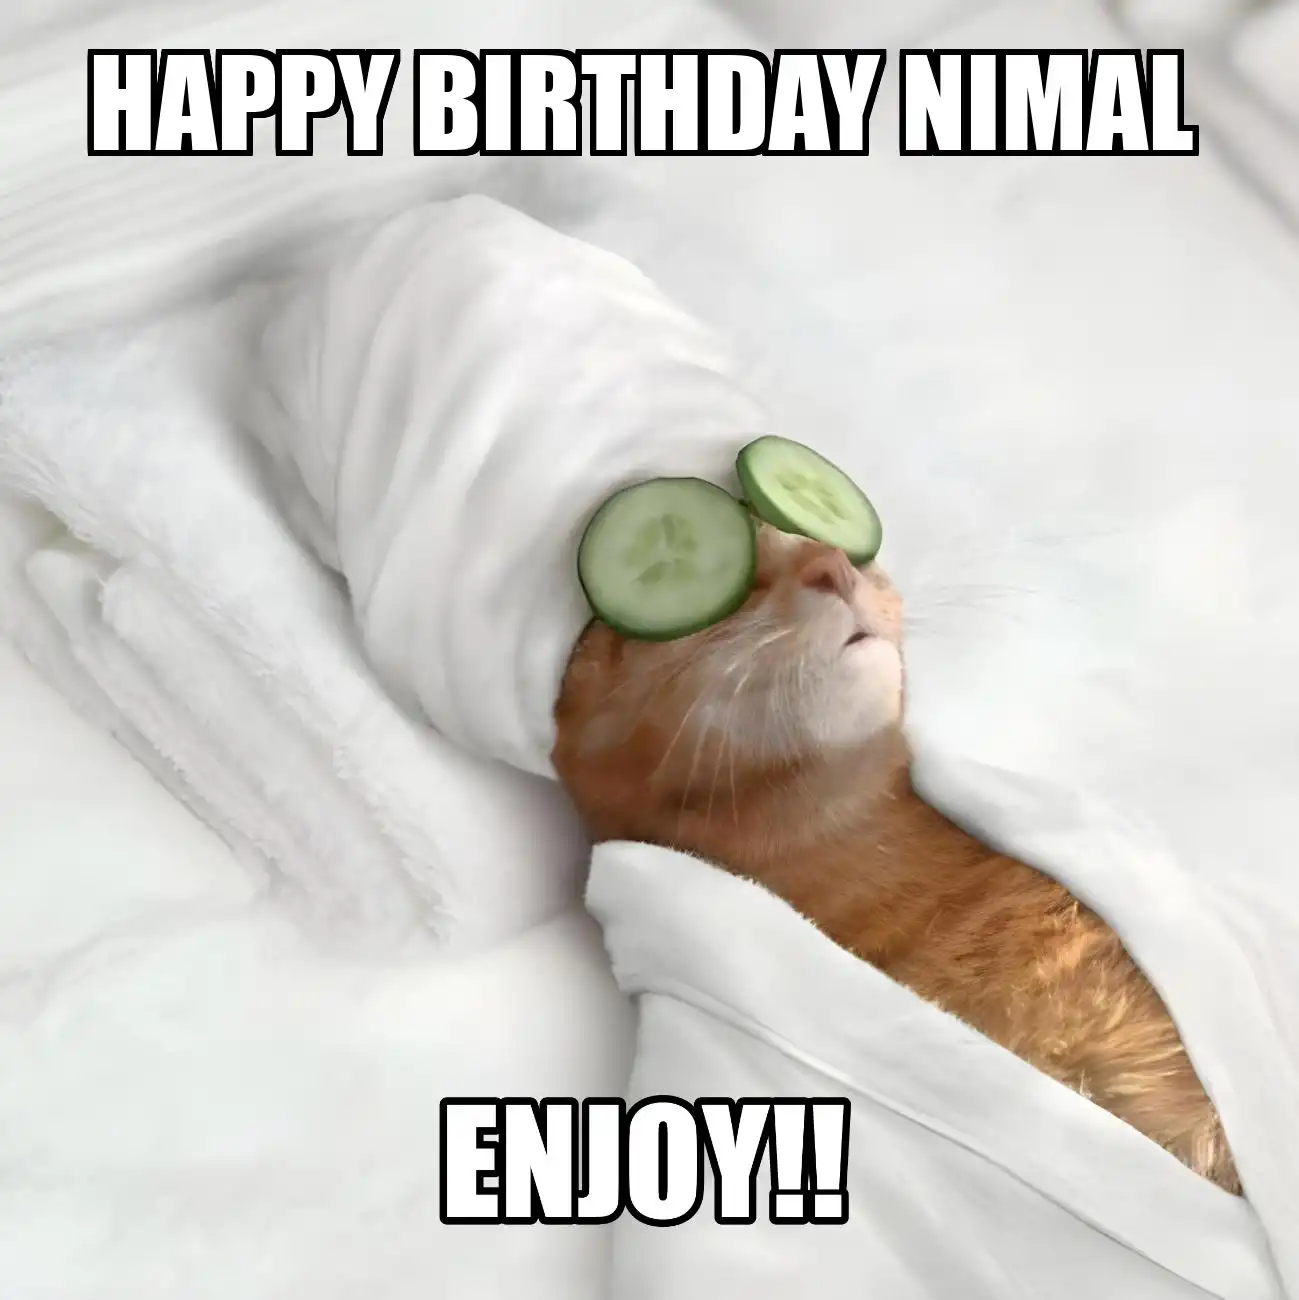 Happy Birthday Nimal Enjoy Cat Meme